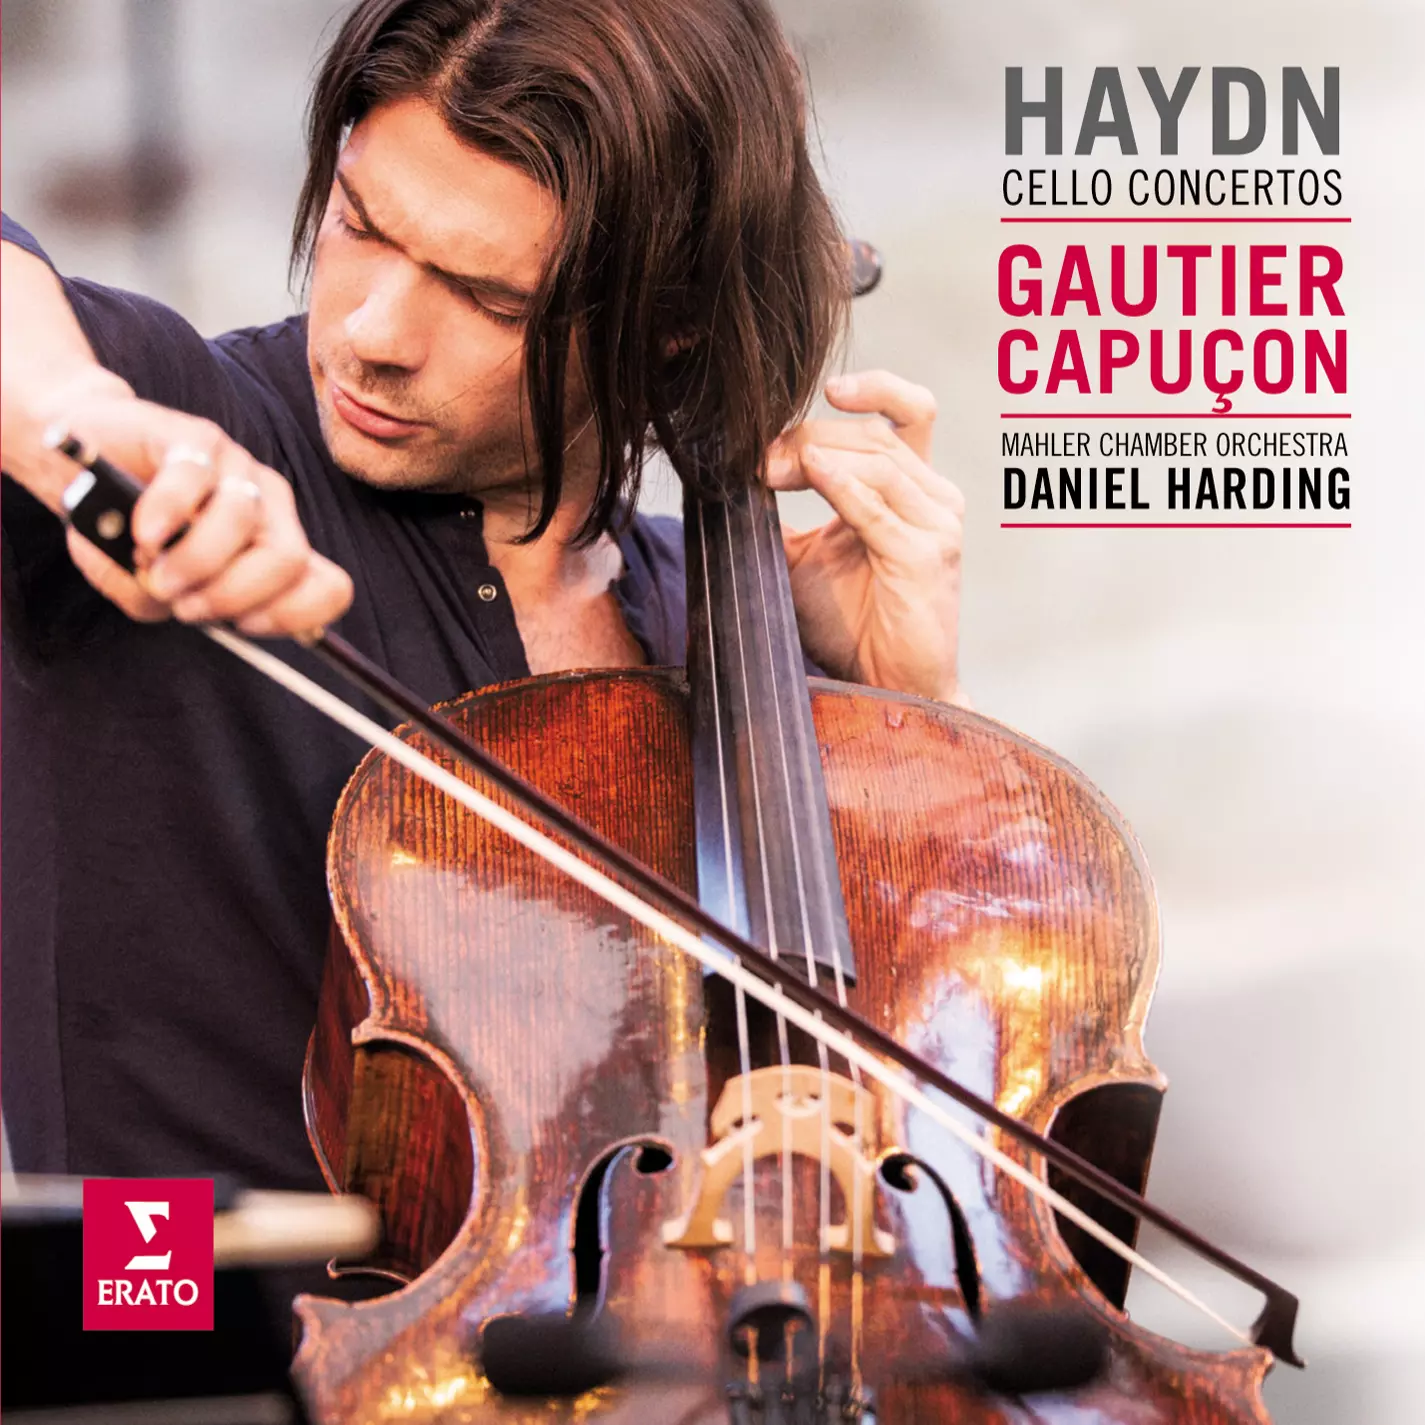 Haydn Cello Concertos (Capuçon)